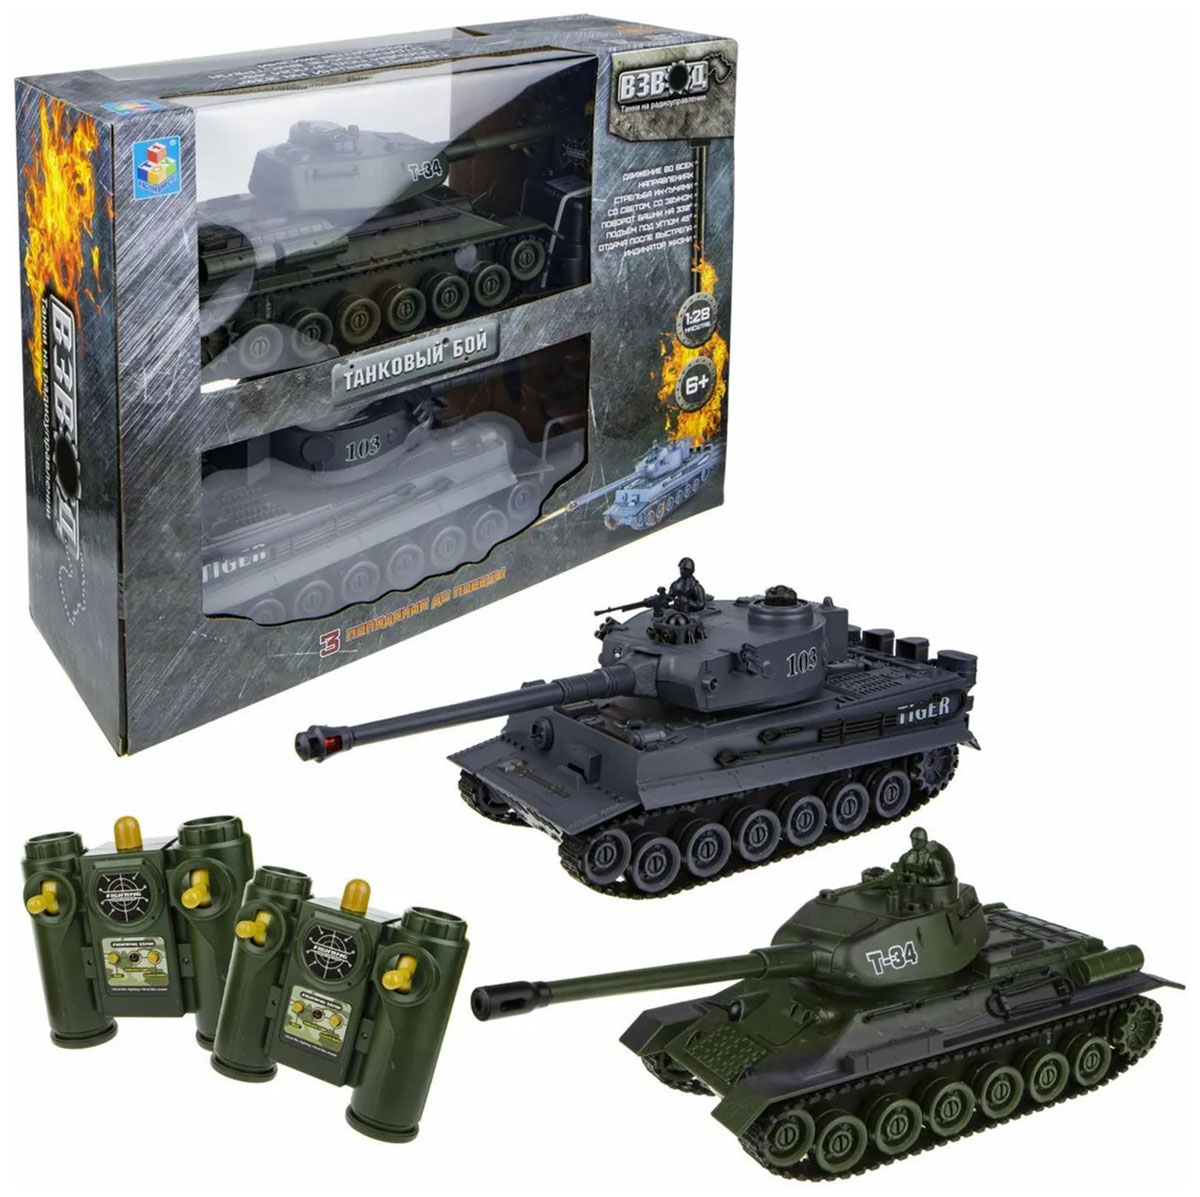 Танк 1 Toy Взвод танковый бой р/у (2 танка), 2,4 ГГц, 1:28 (35 см) танковый бой танковое сражение на радиоуправлении 2 танка свет и звук